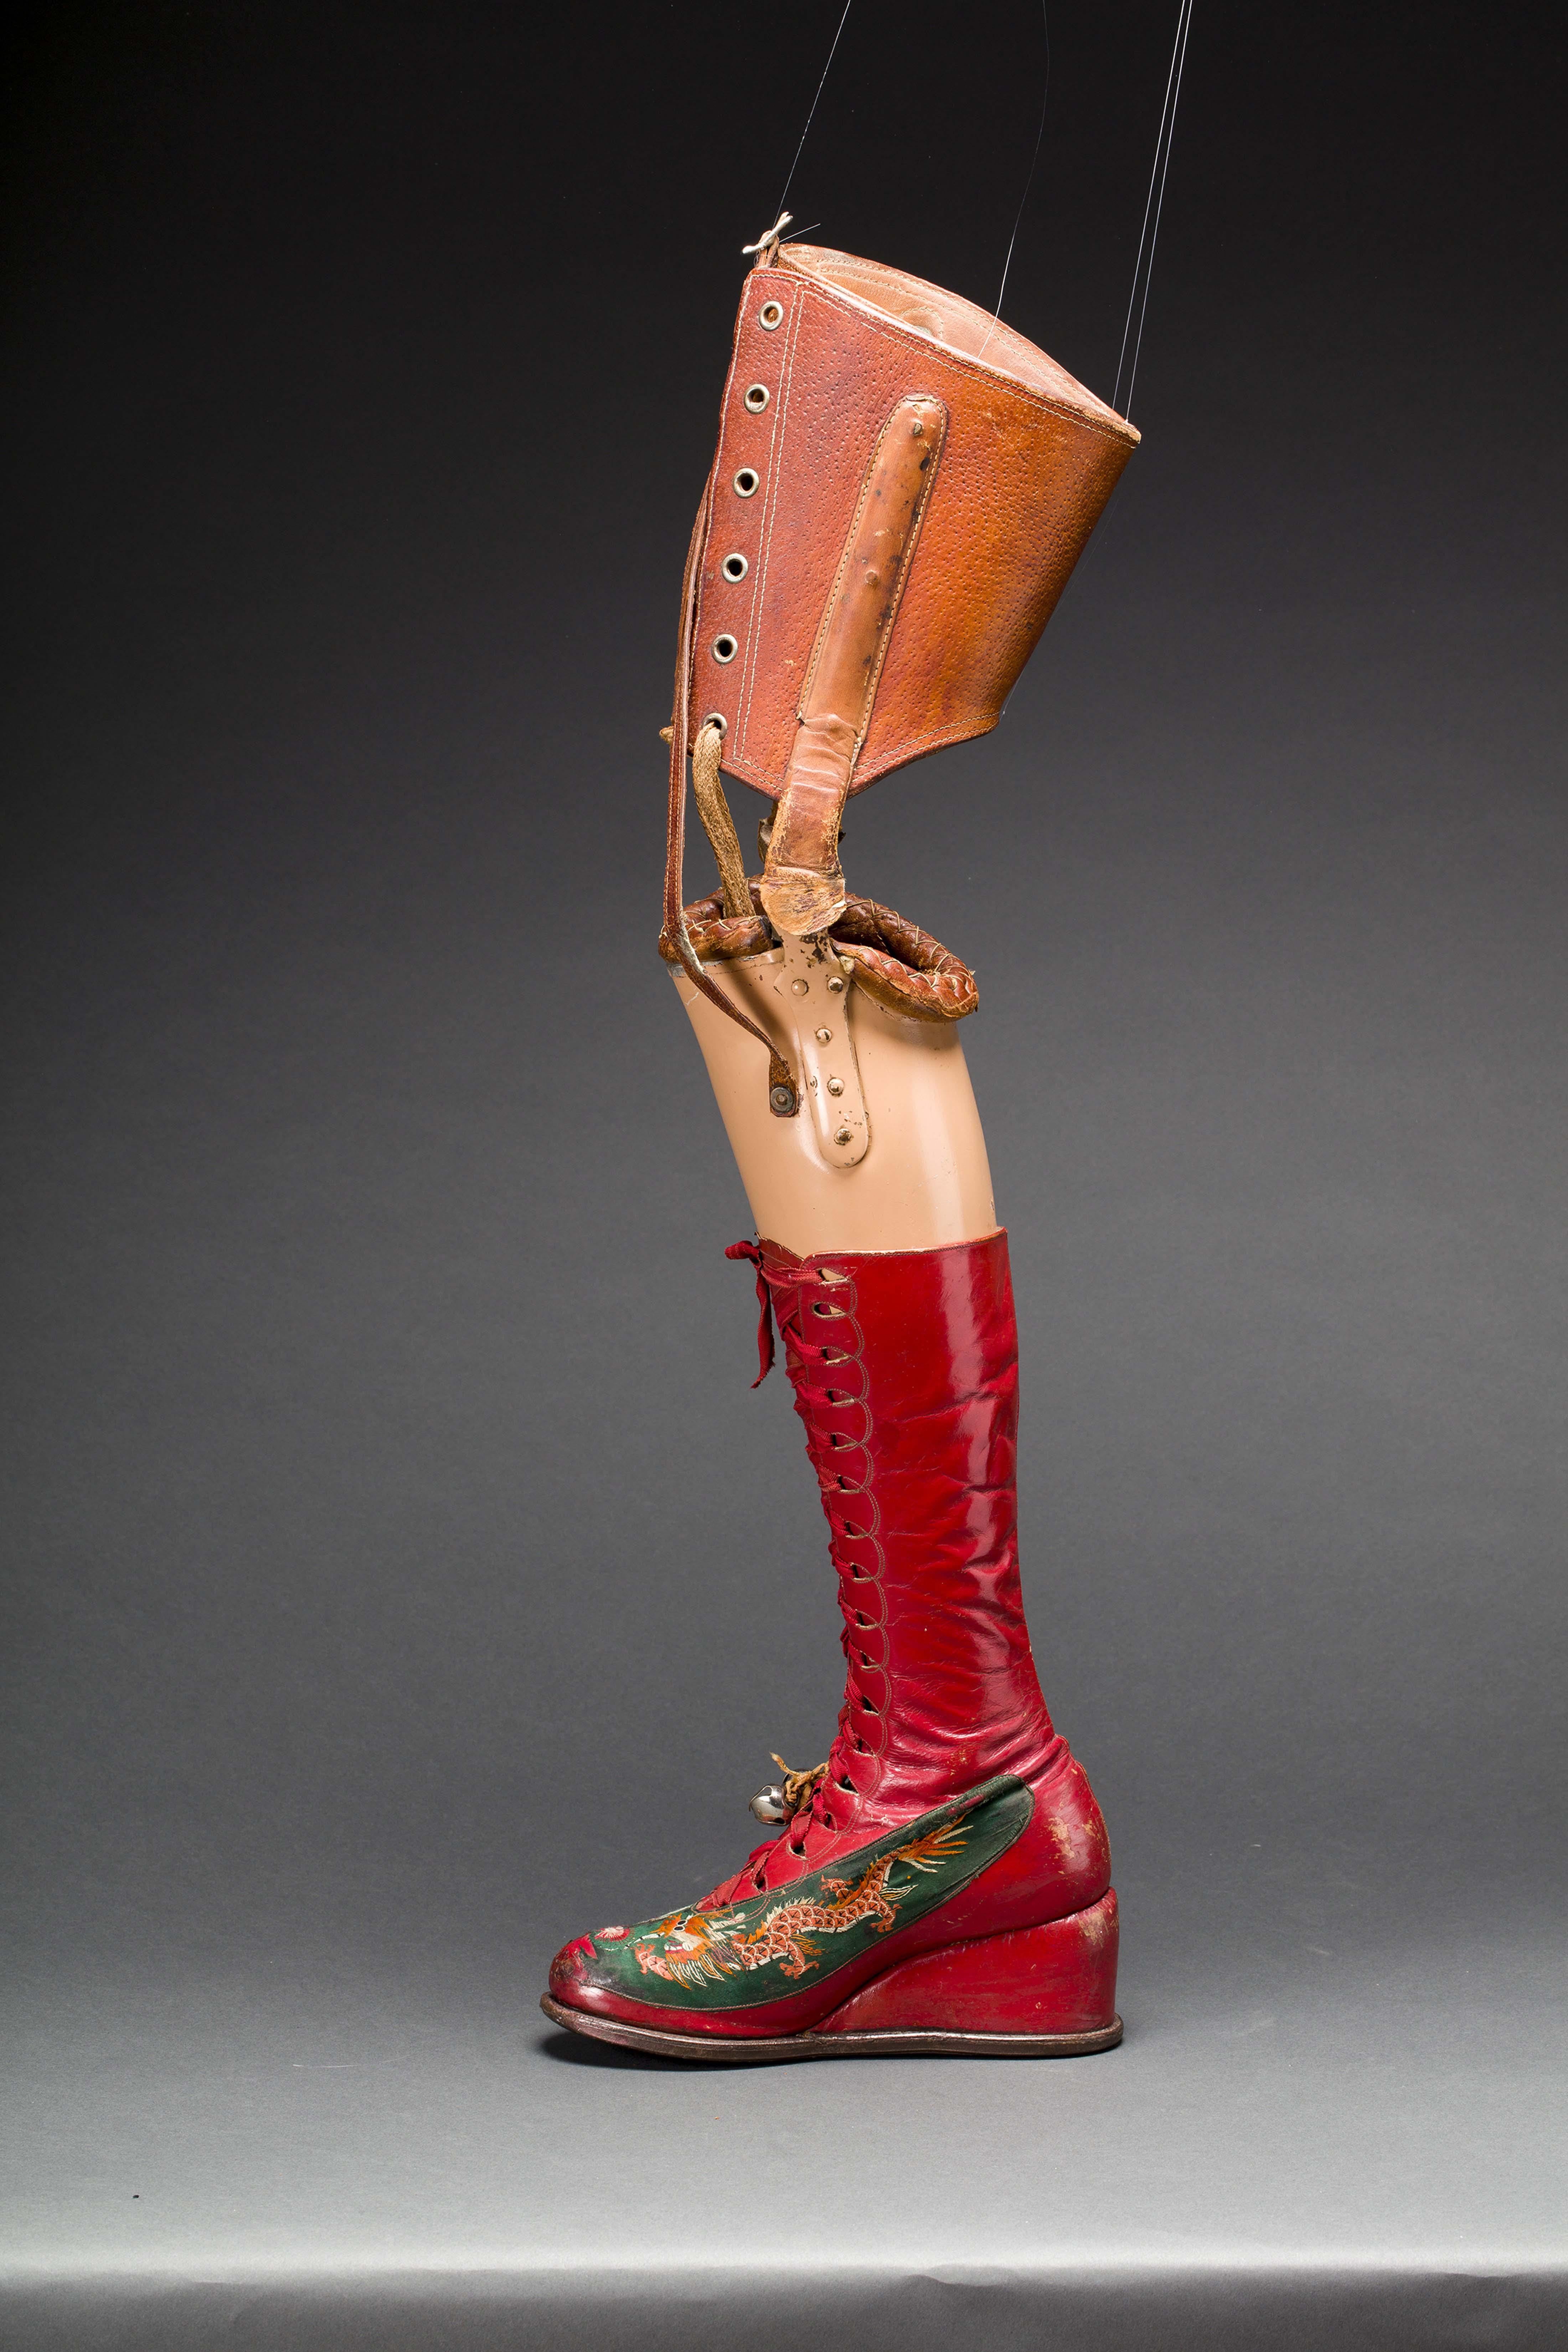 Prothèse de jambe avec botte en cuir et
soie brodée de motifs chinois.
© Museo Frida Kahlo - Casa Azul collection
- Javier Hinojosa, 2017